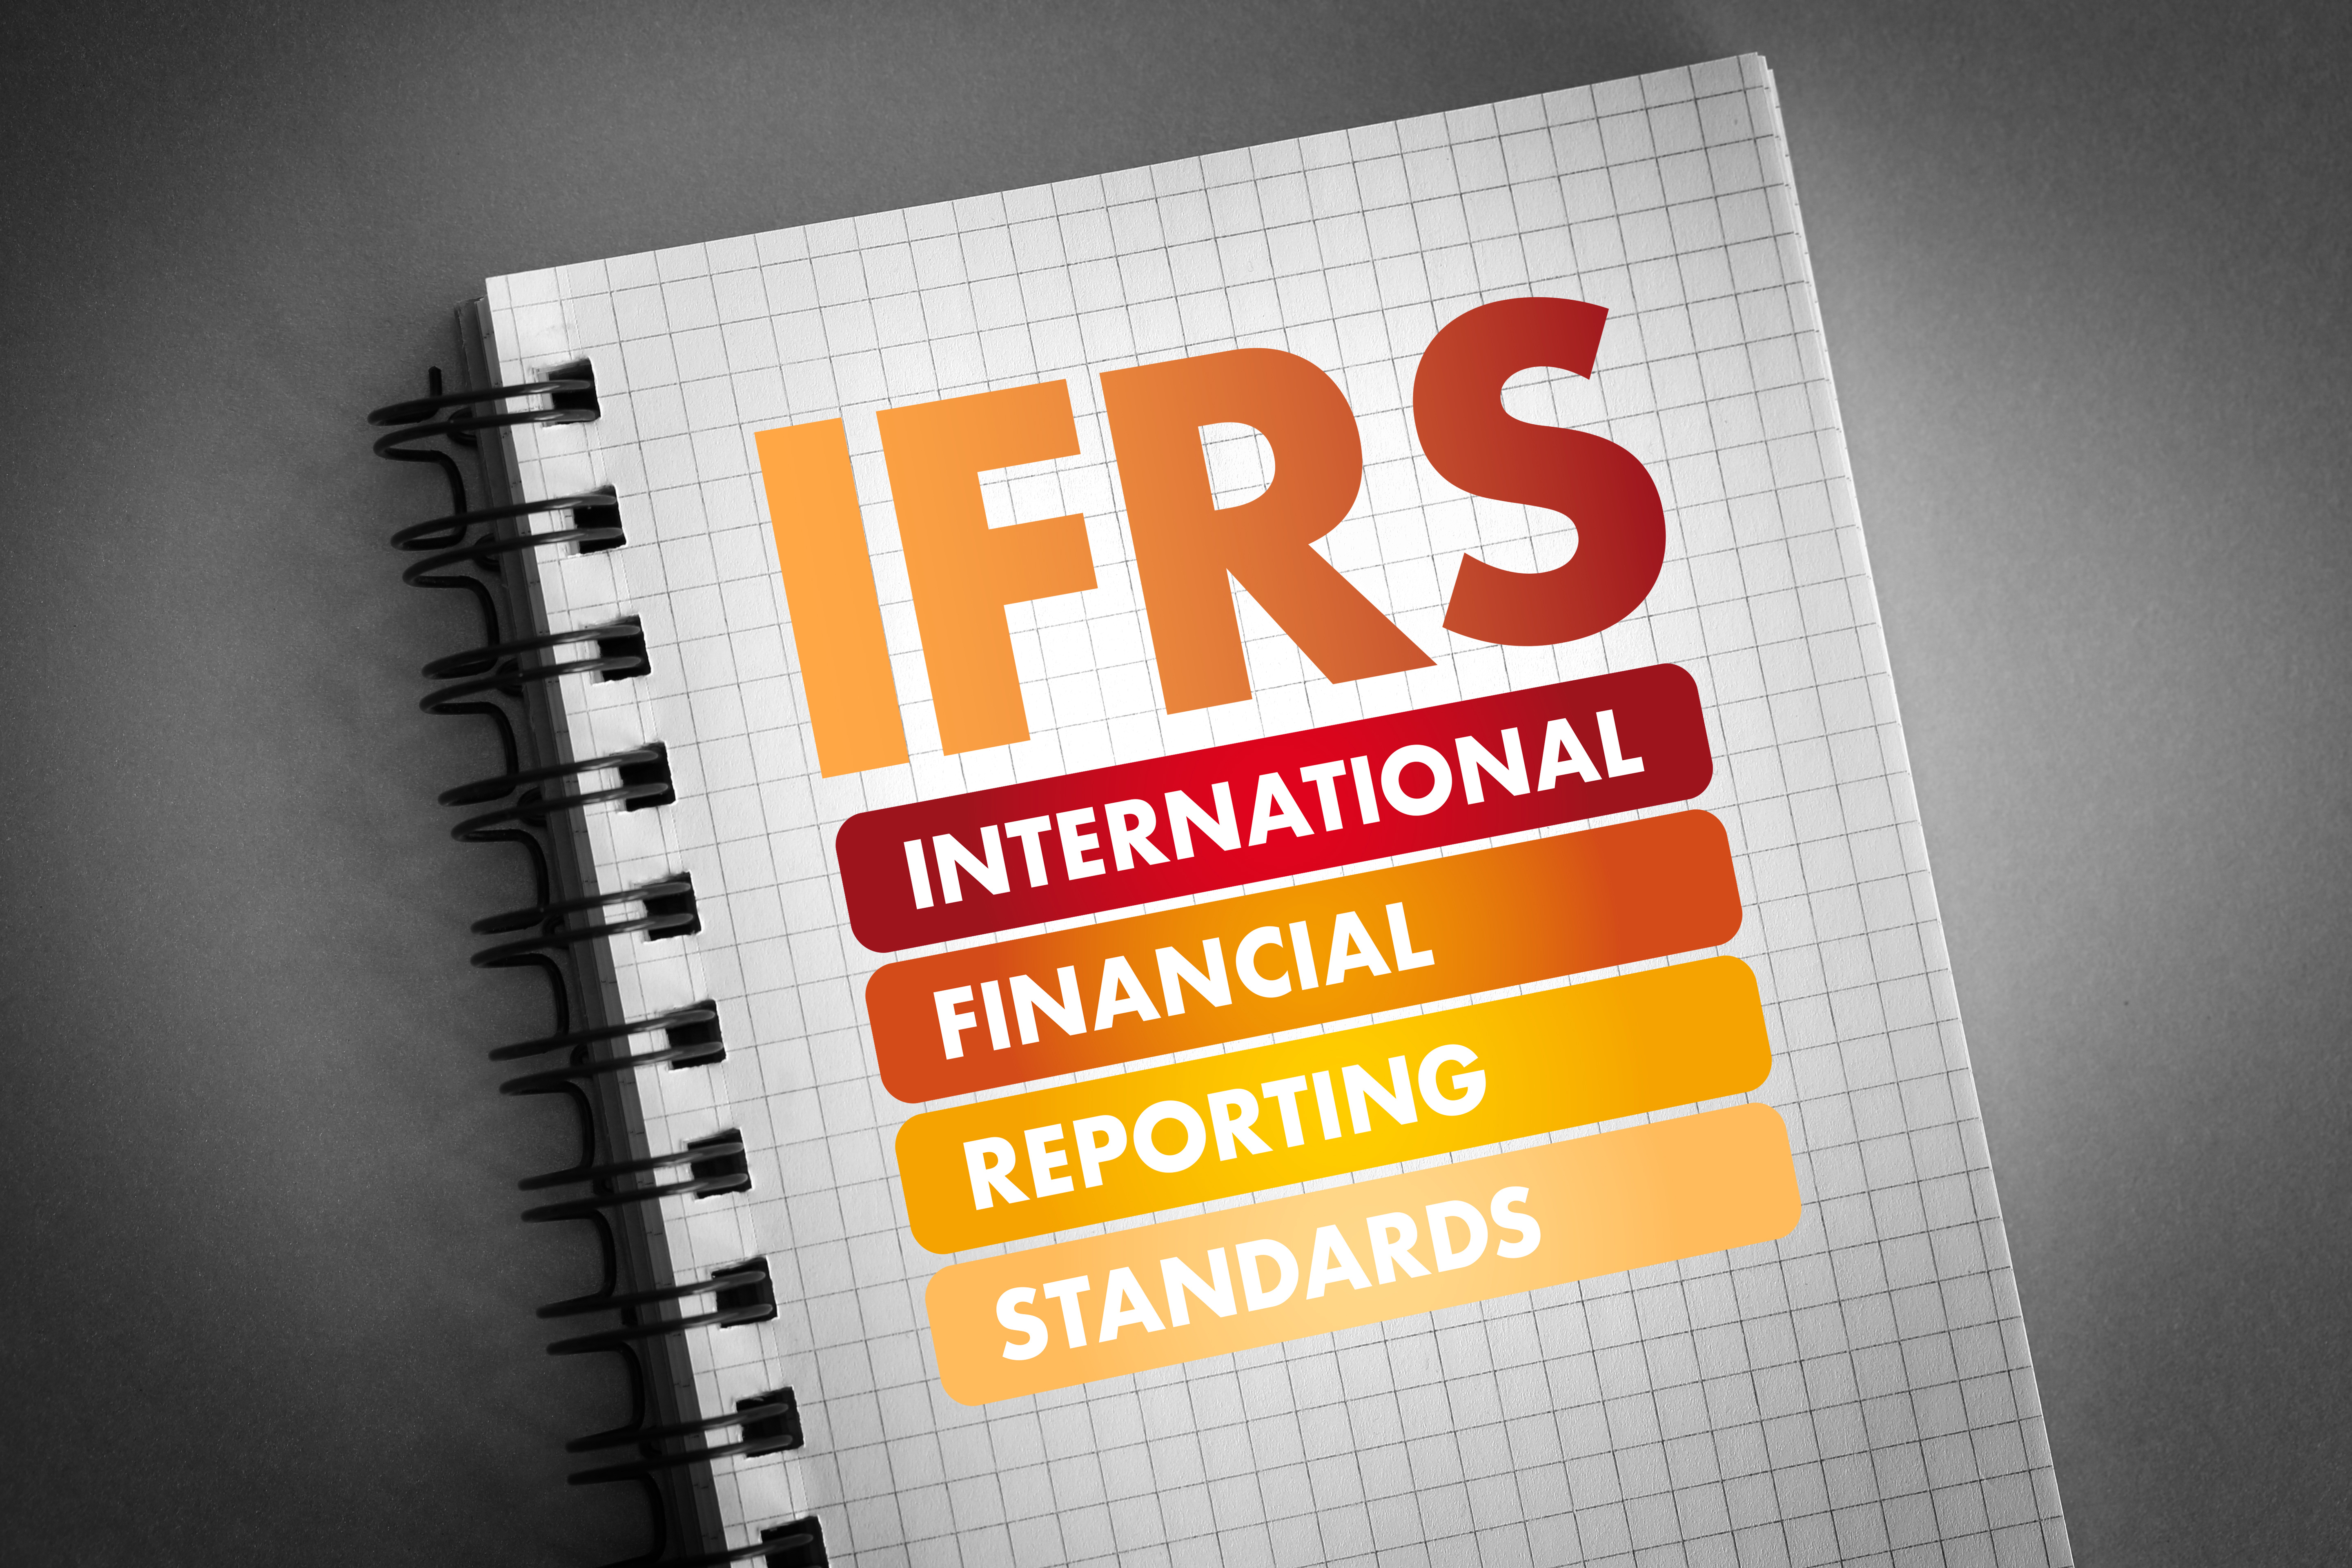 Intermediari IFRS: in GU provvedimento bilancio